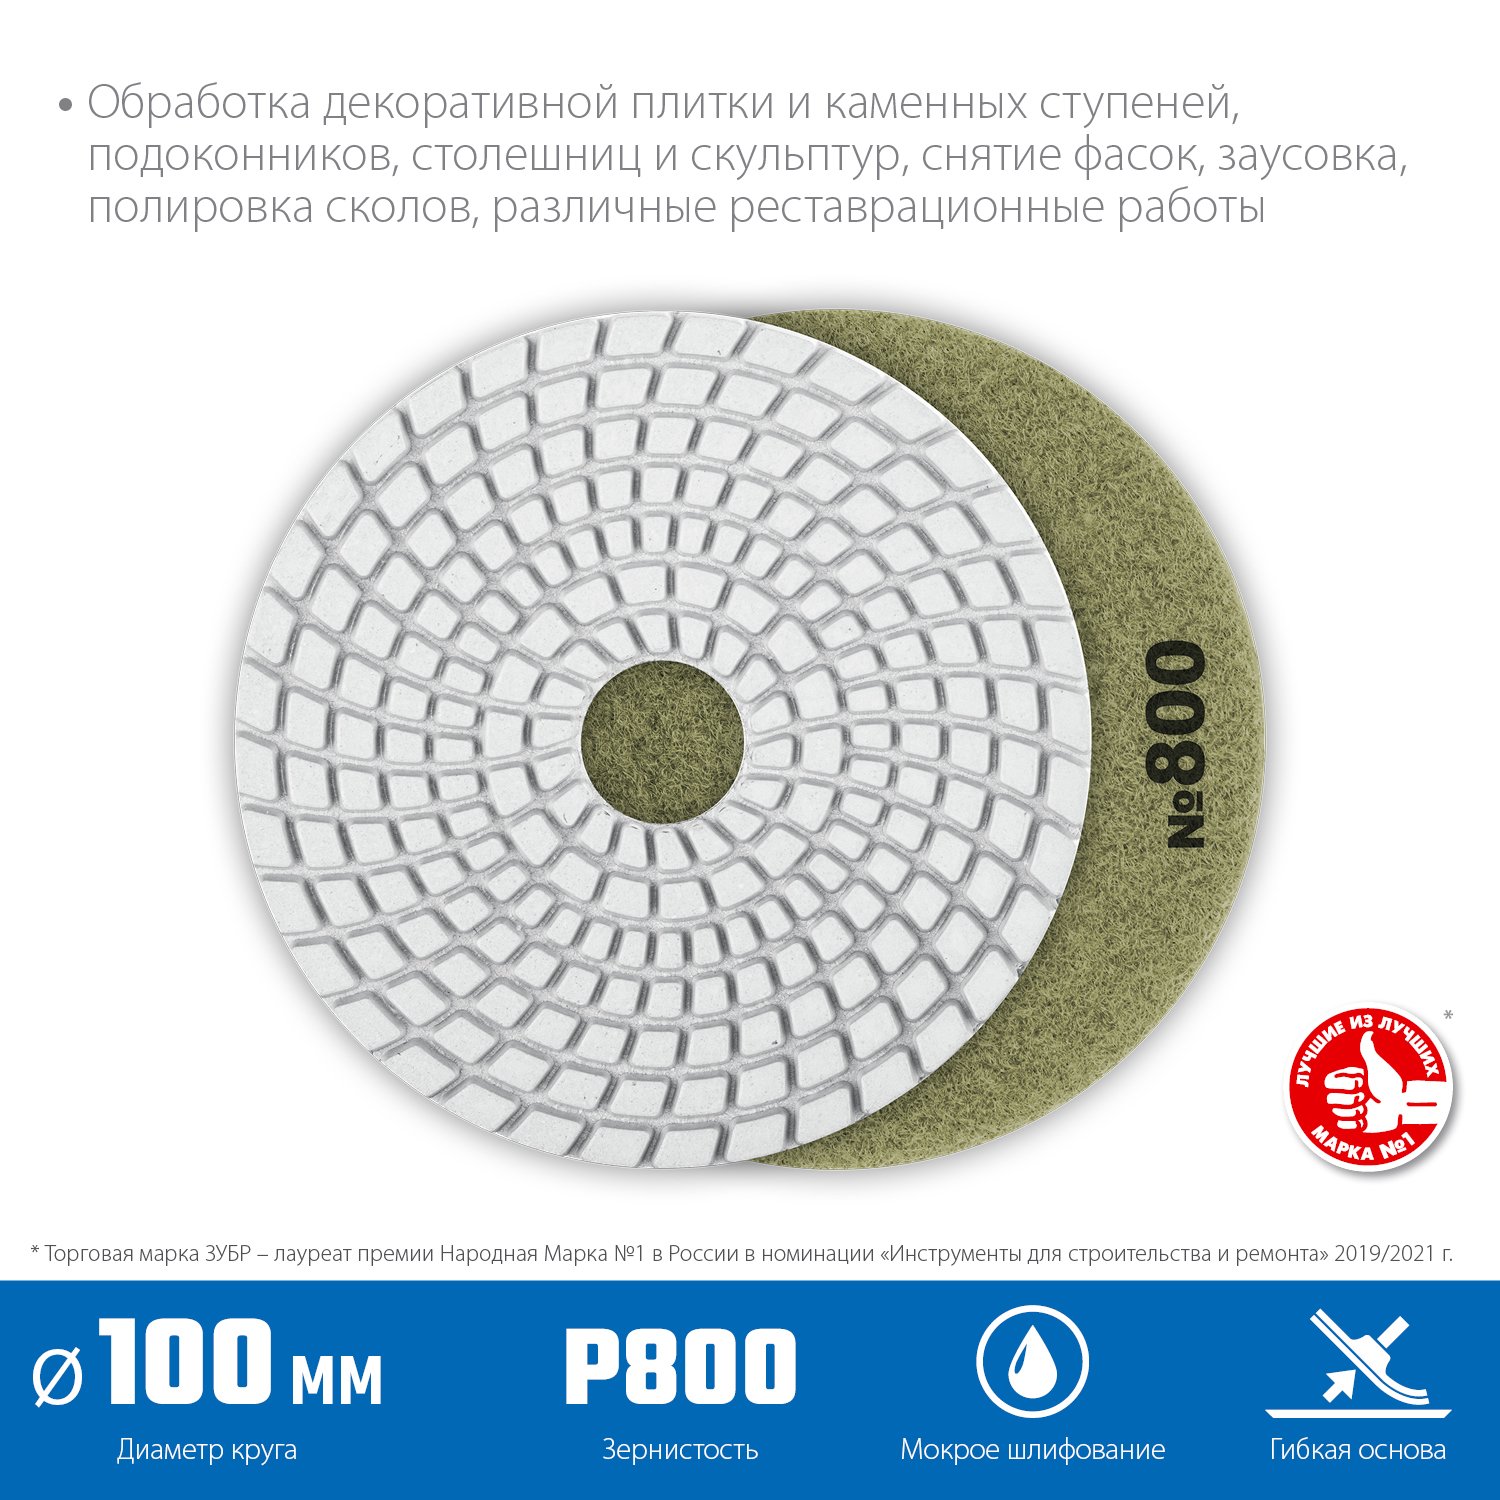 ЗУБР 100мм N800 алмазный гибкий шлифовальный круг (Черепашка) для мокрого шлифования (29866-800)